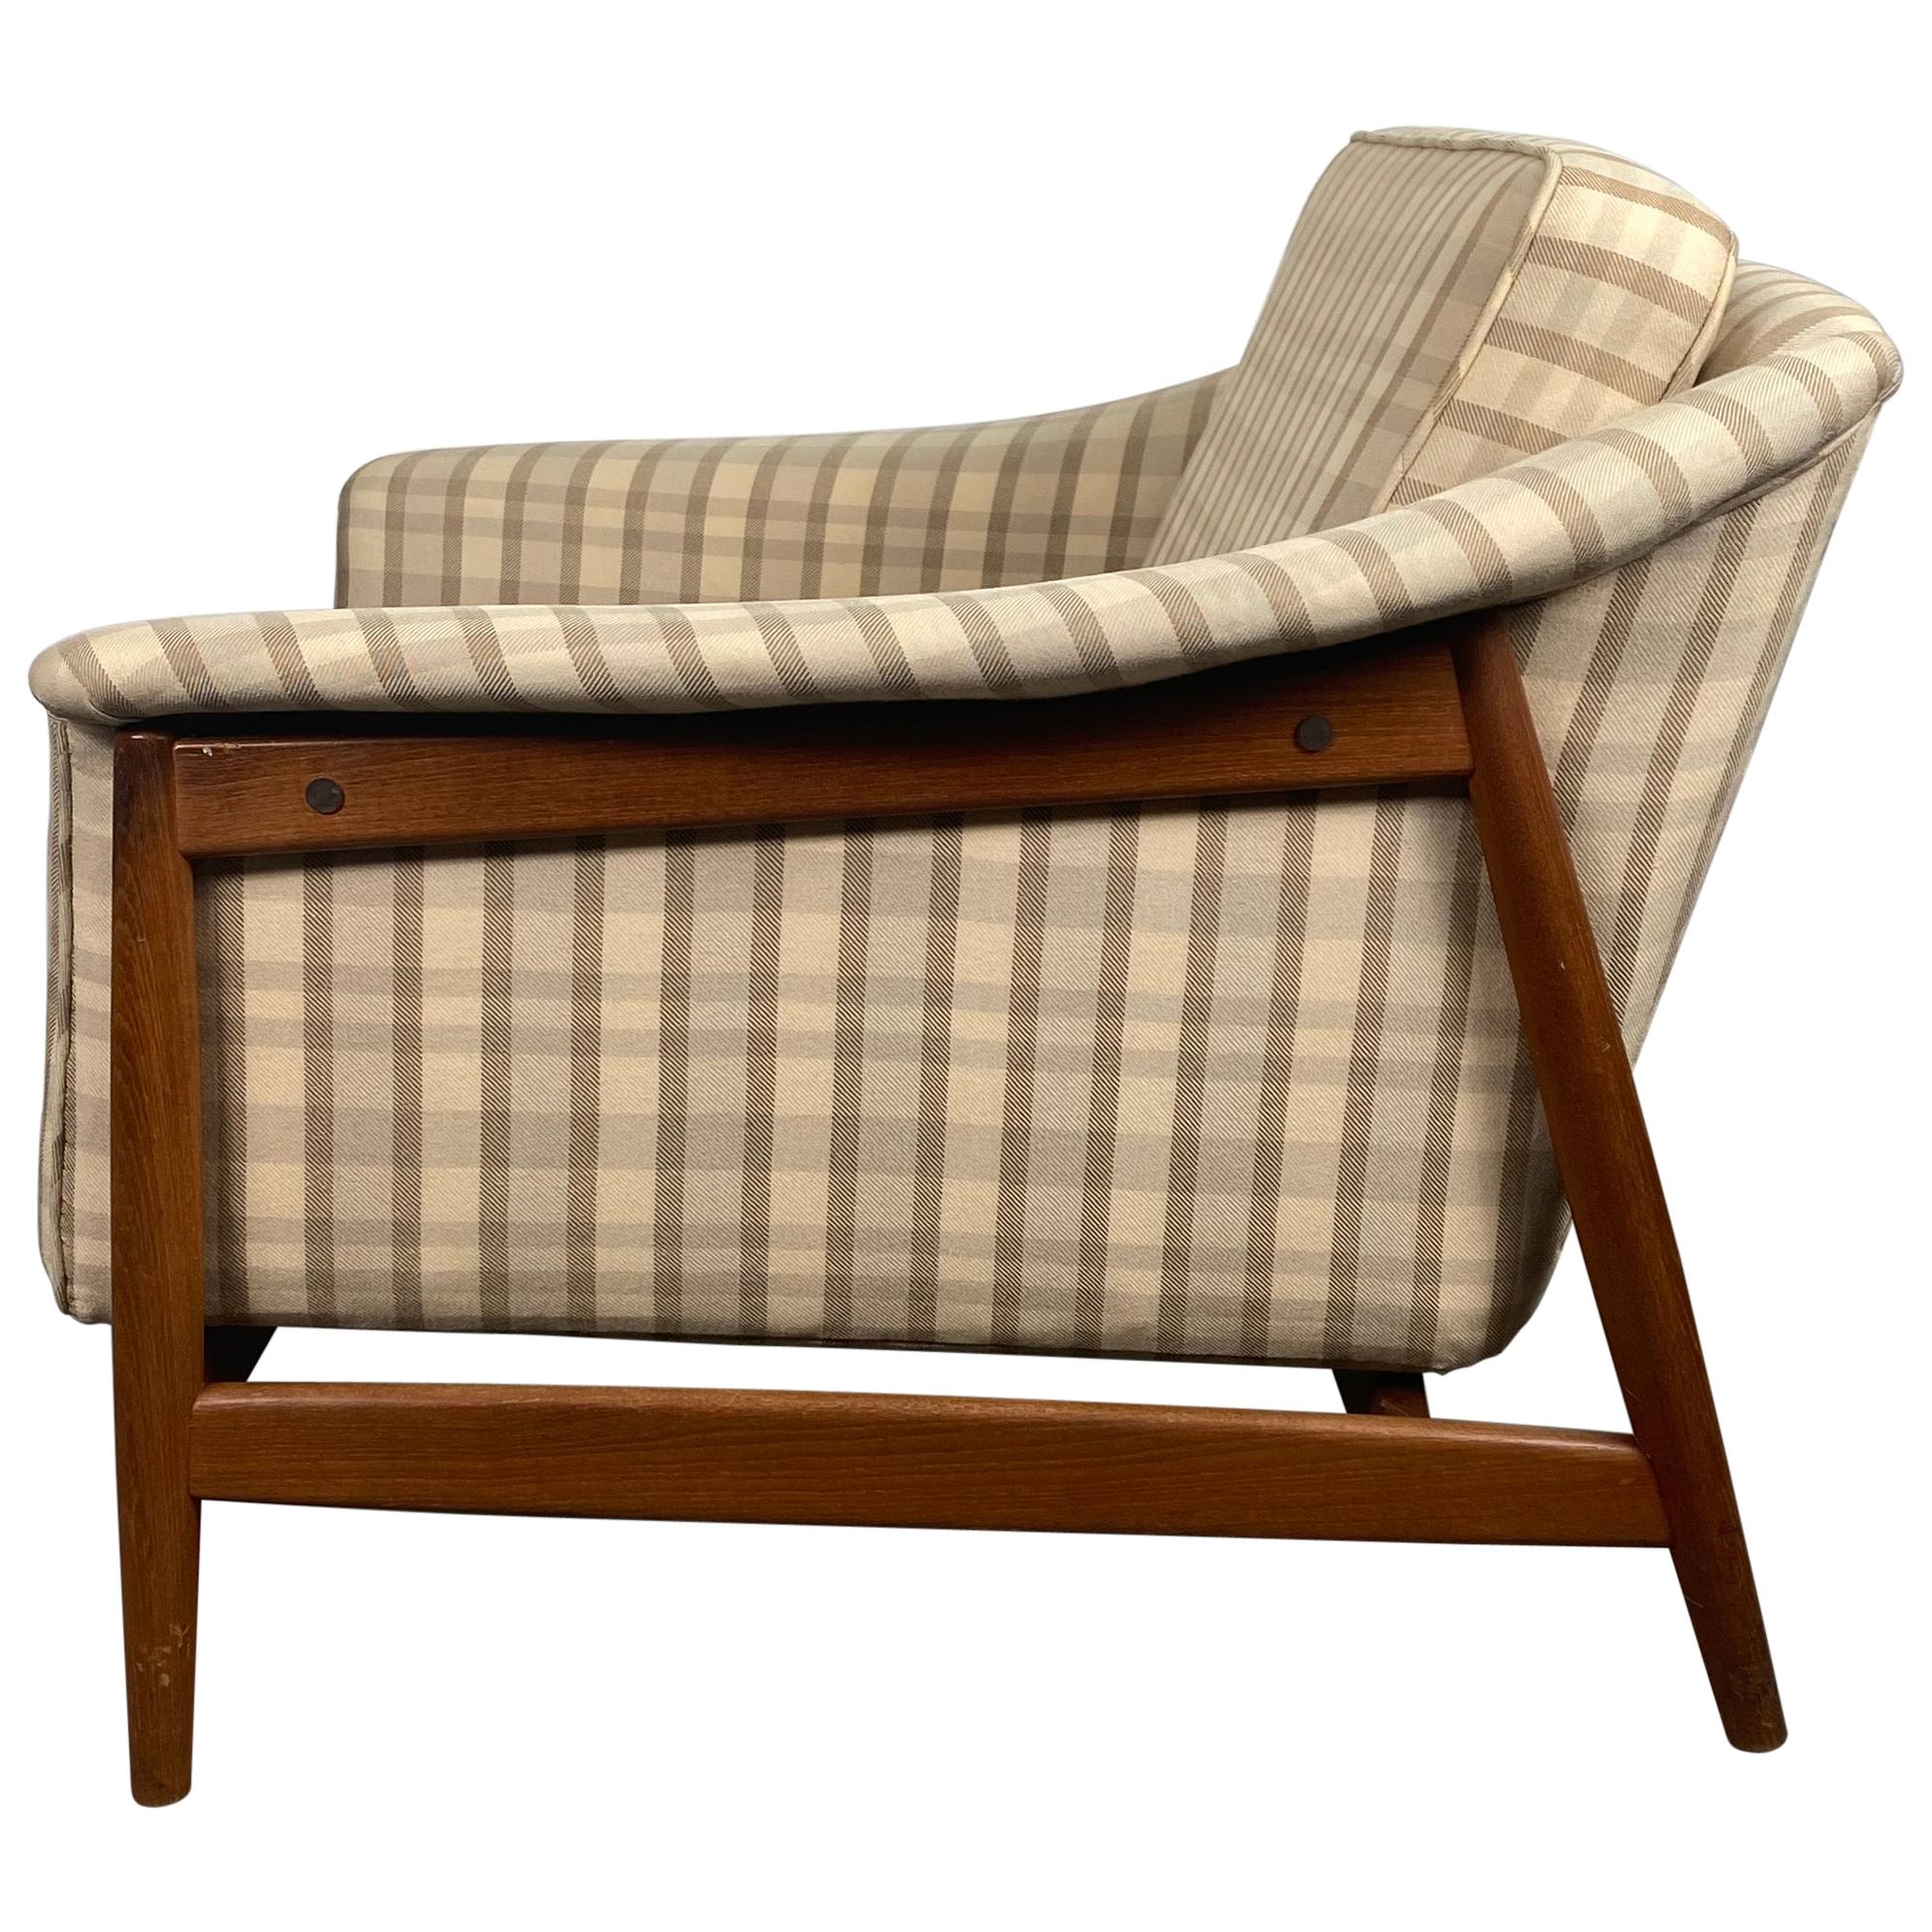 Classic Scandinavian Modernist Teak Lounge Chair by Dux, Sweden